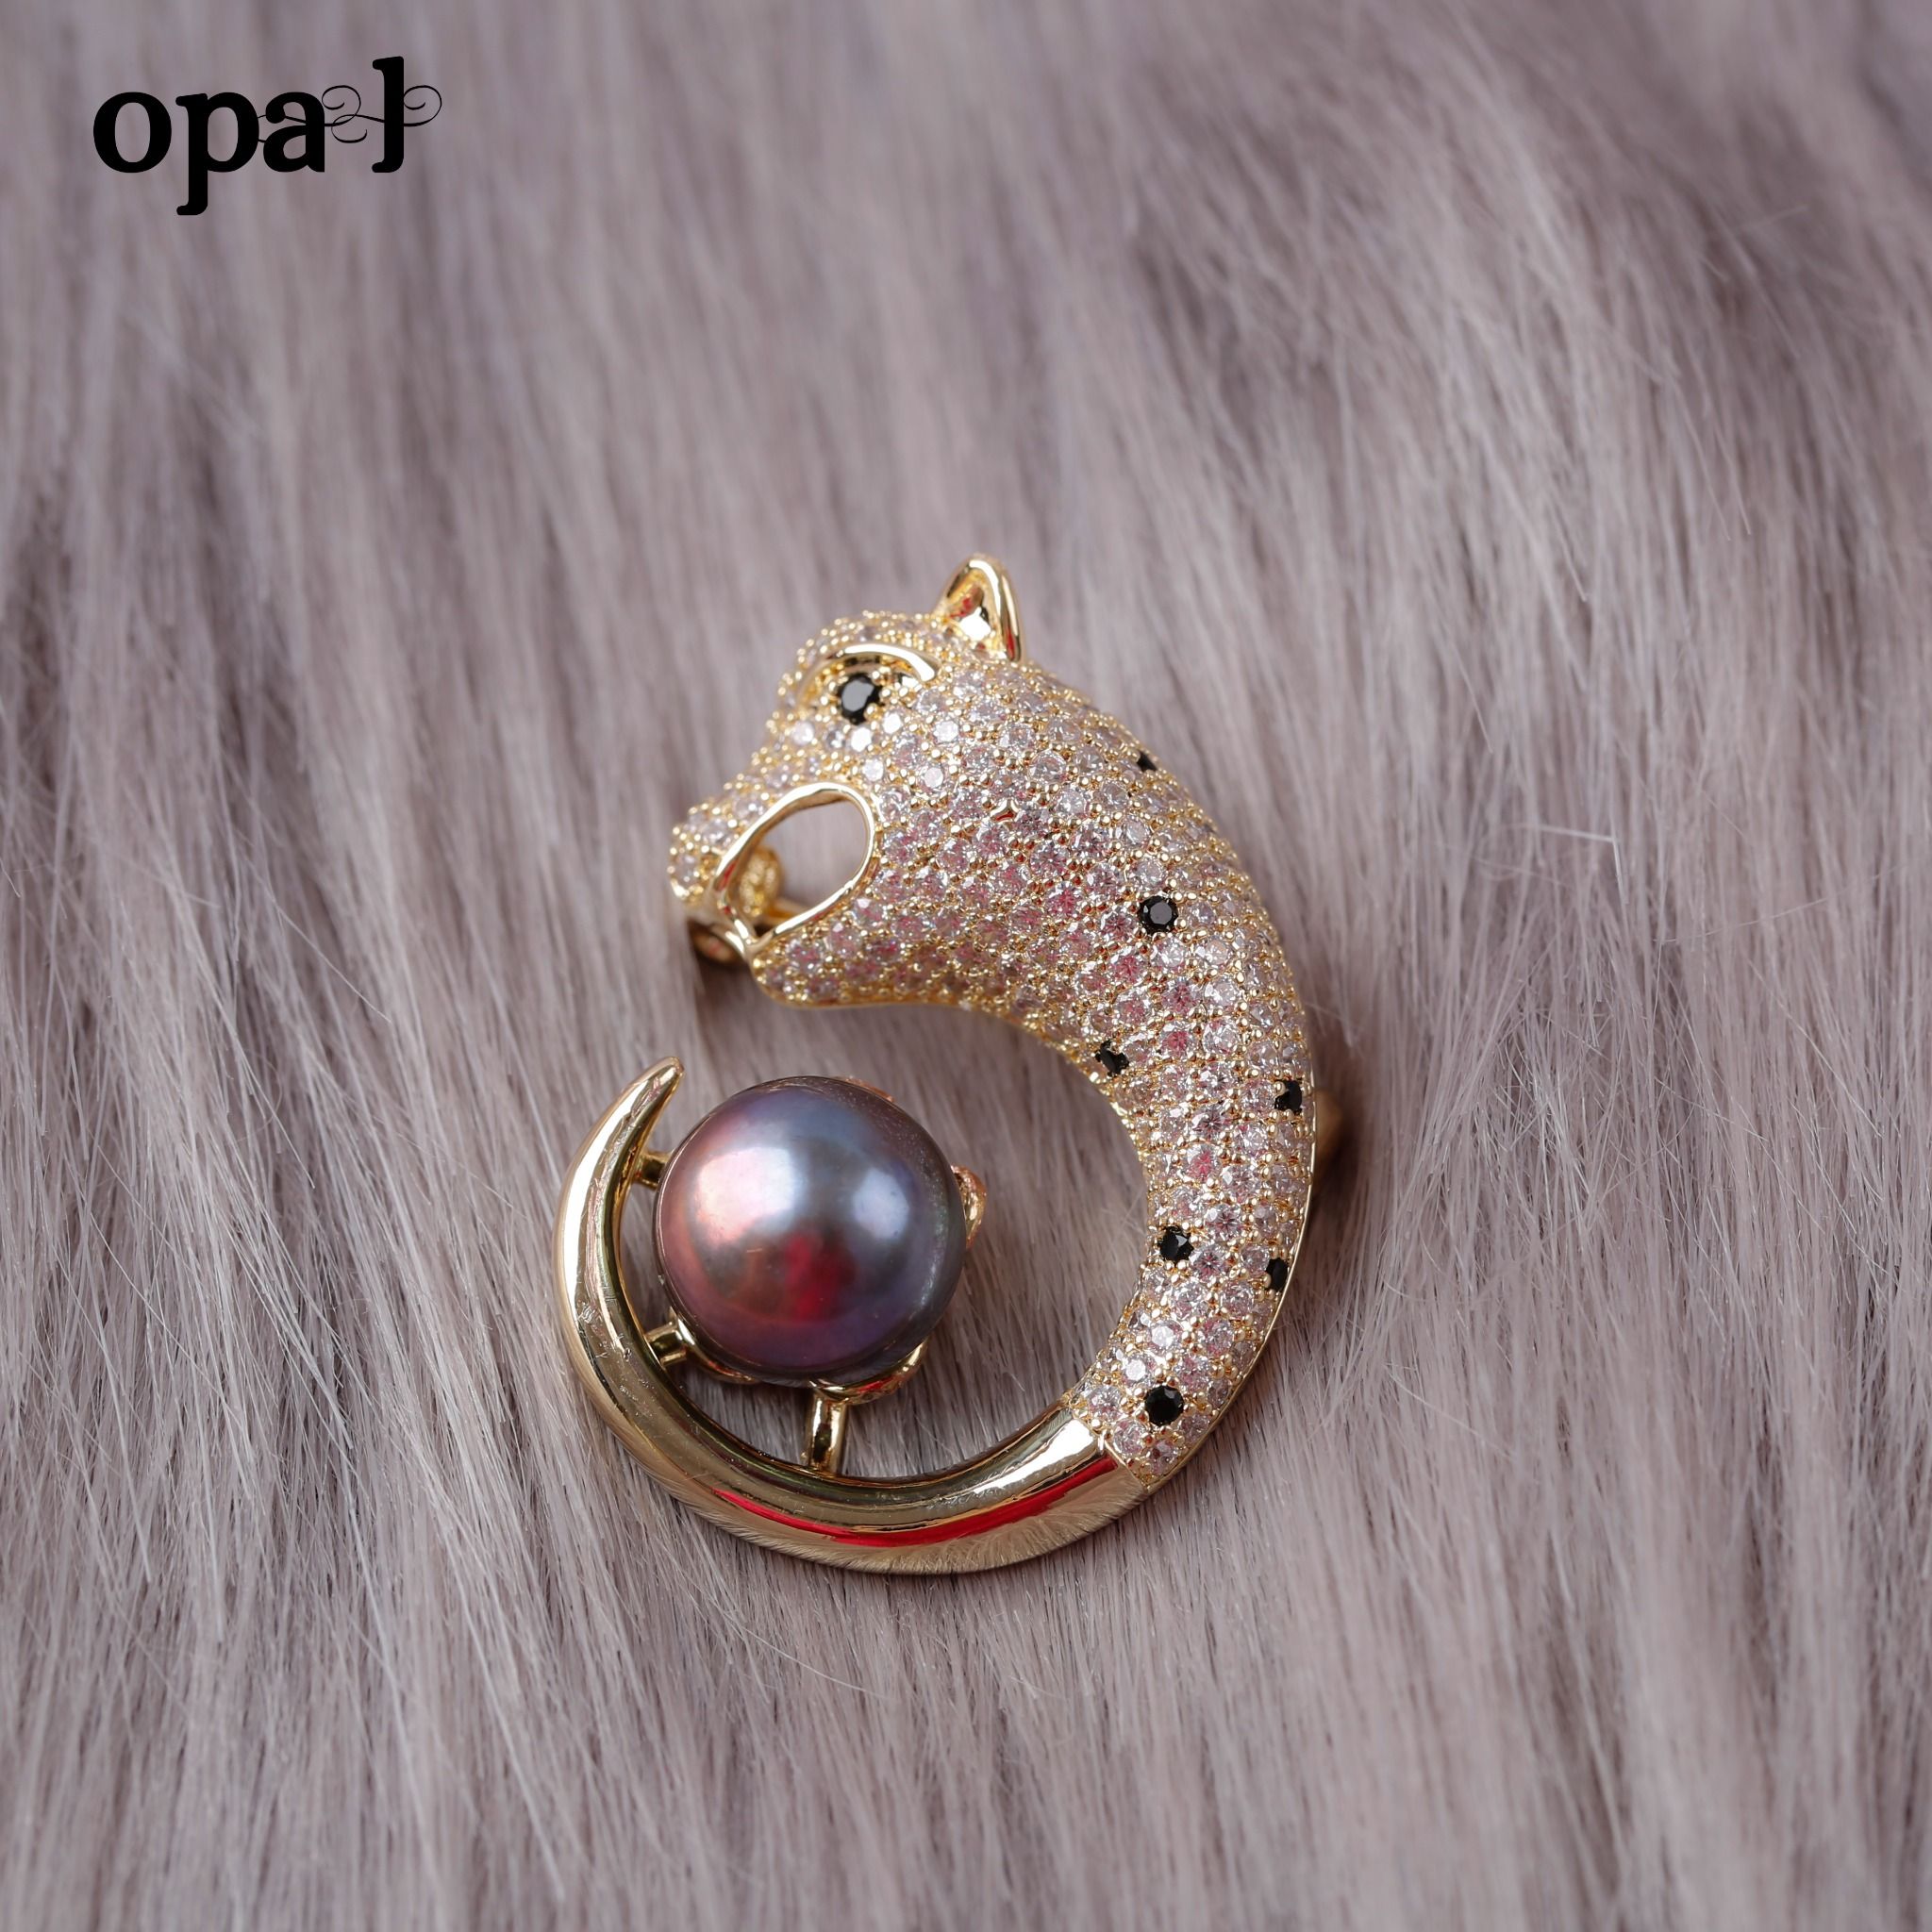  cài áo thiết kế phong cách thanh lịch đính ngọc trai thật thương hiệu Opal 